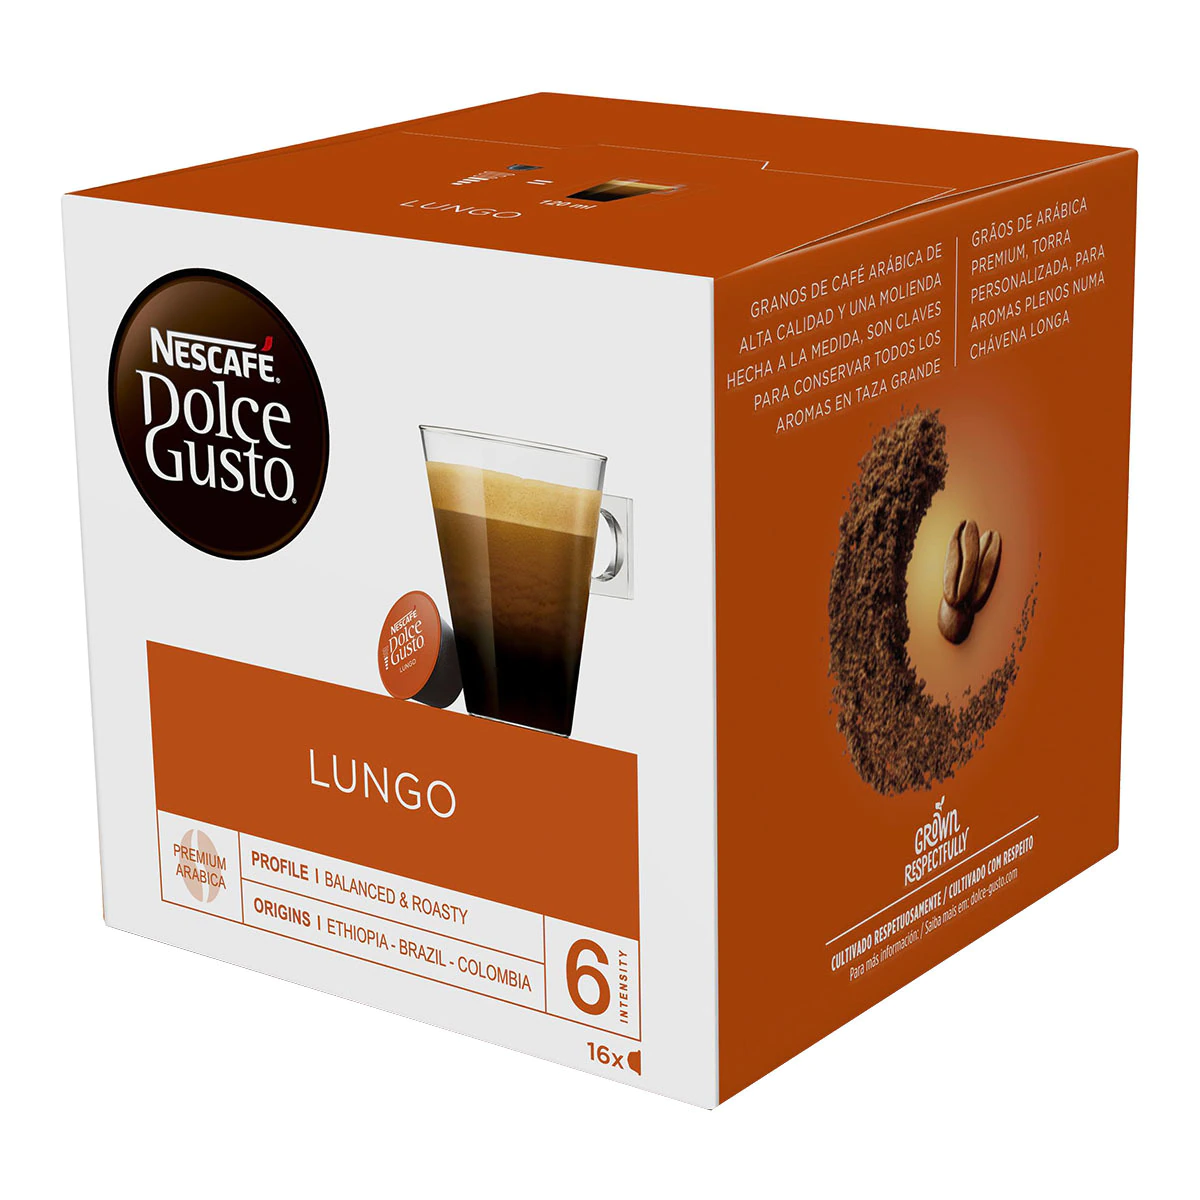 Estuche 16 cápsulas DOLCE GUSTO café Lungo Premium arábica de Ethiopía, Brasil y Colombia de intensidad 6